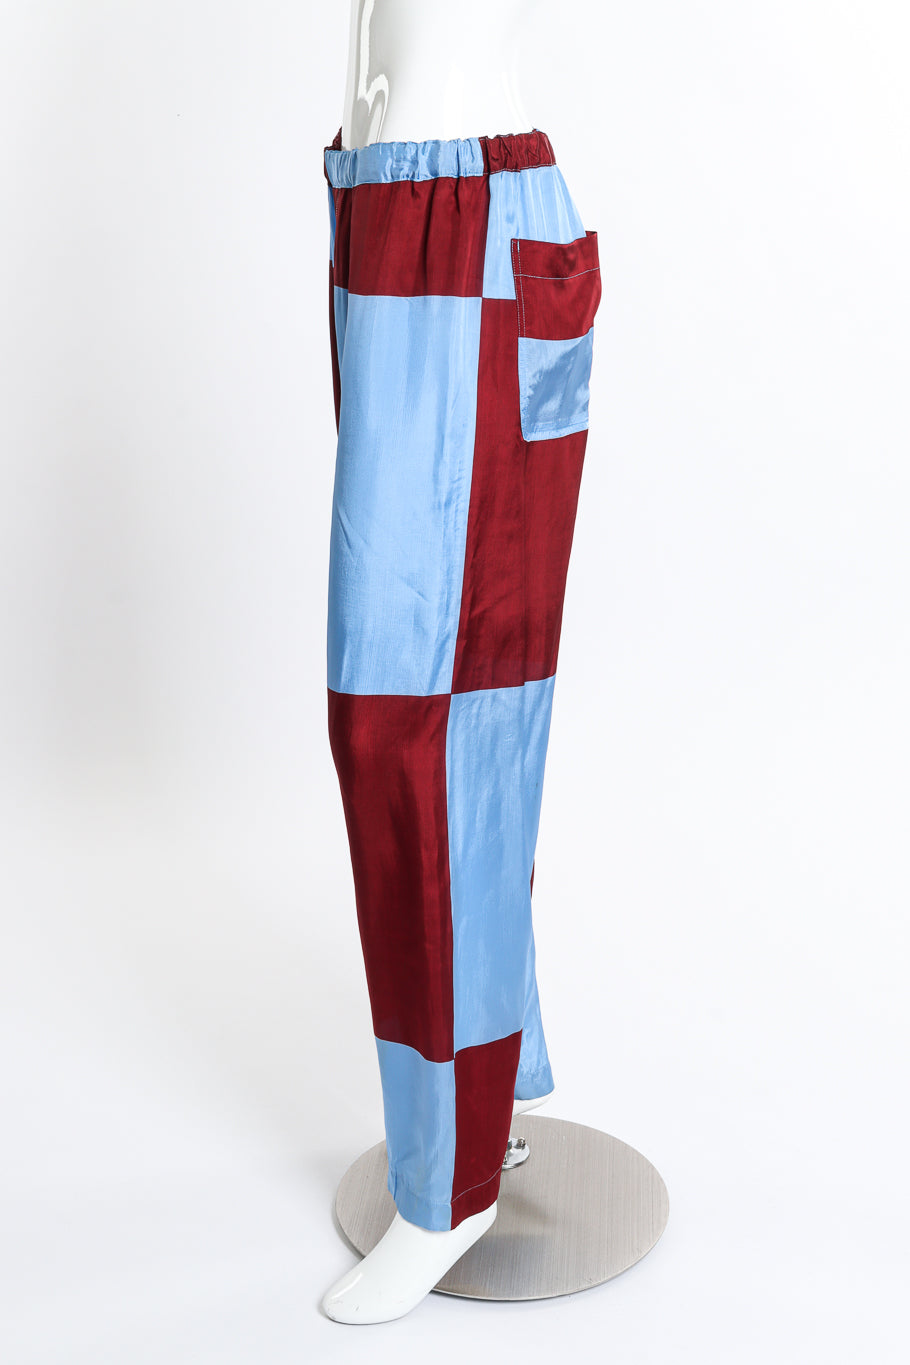 Comme des Garcons Colorblock Checker Pants side on mannequin @recess la